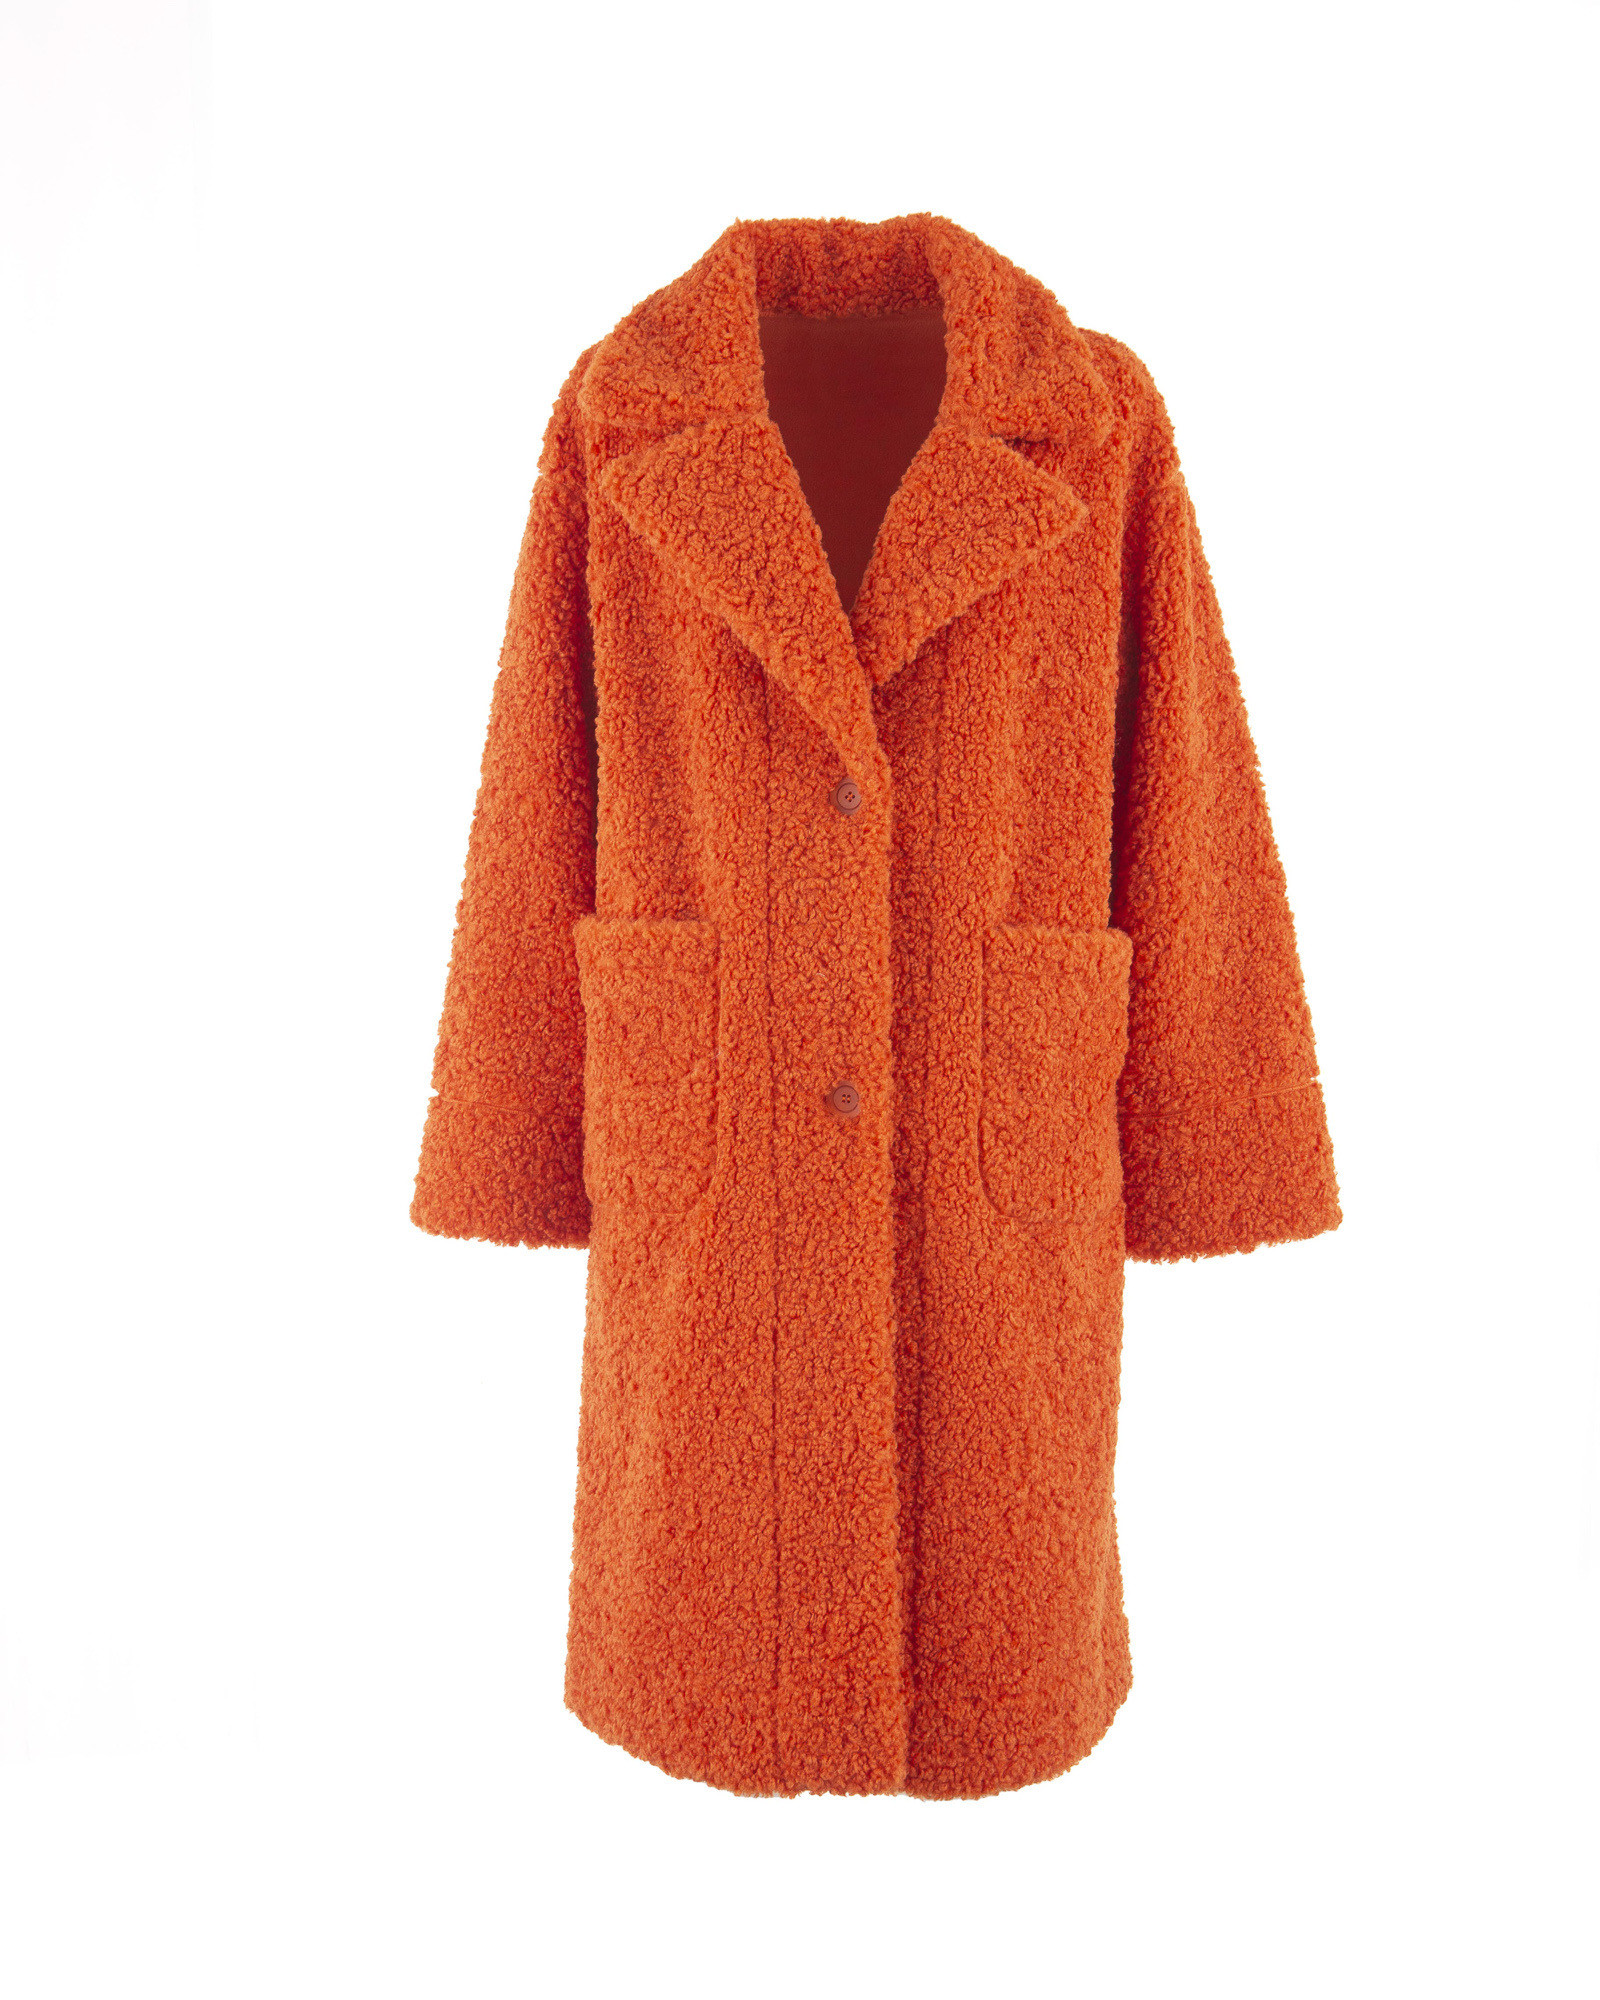 Kabát BUDAPEST oranžový